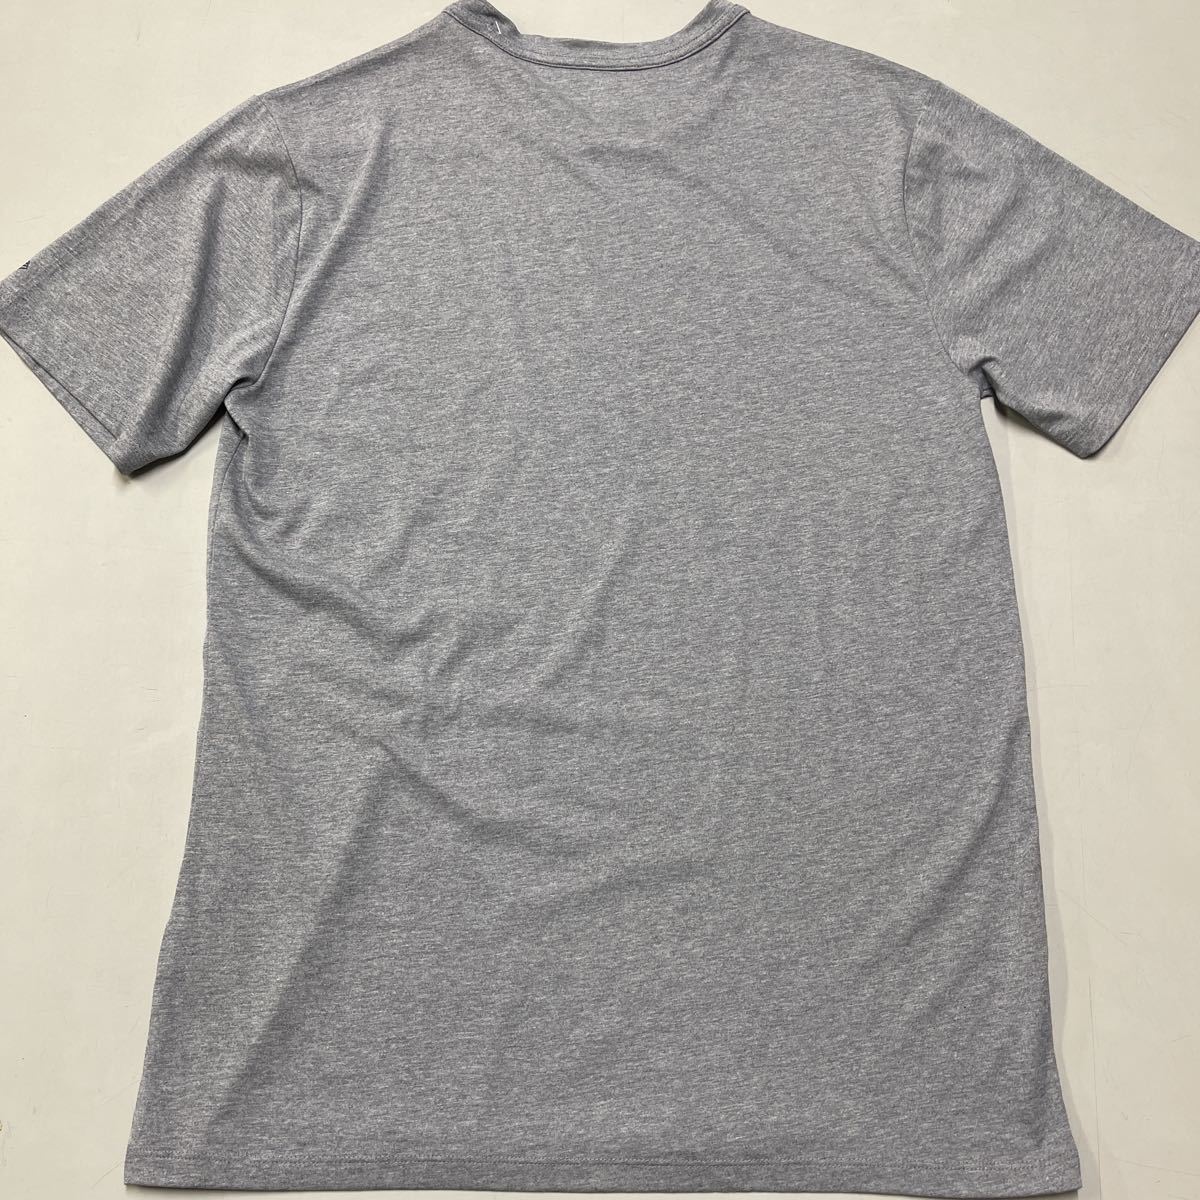 NEW ERA Tシャツ 未使用 Lサイズ 杢グレー 半袖 メンズ ニューエラ 無地 シンプル_画像5